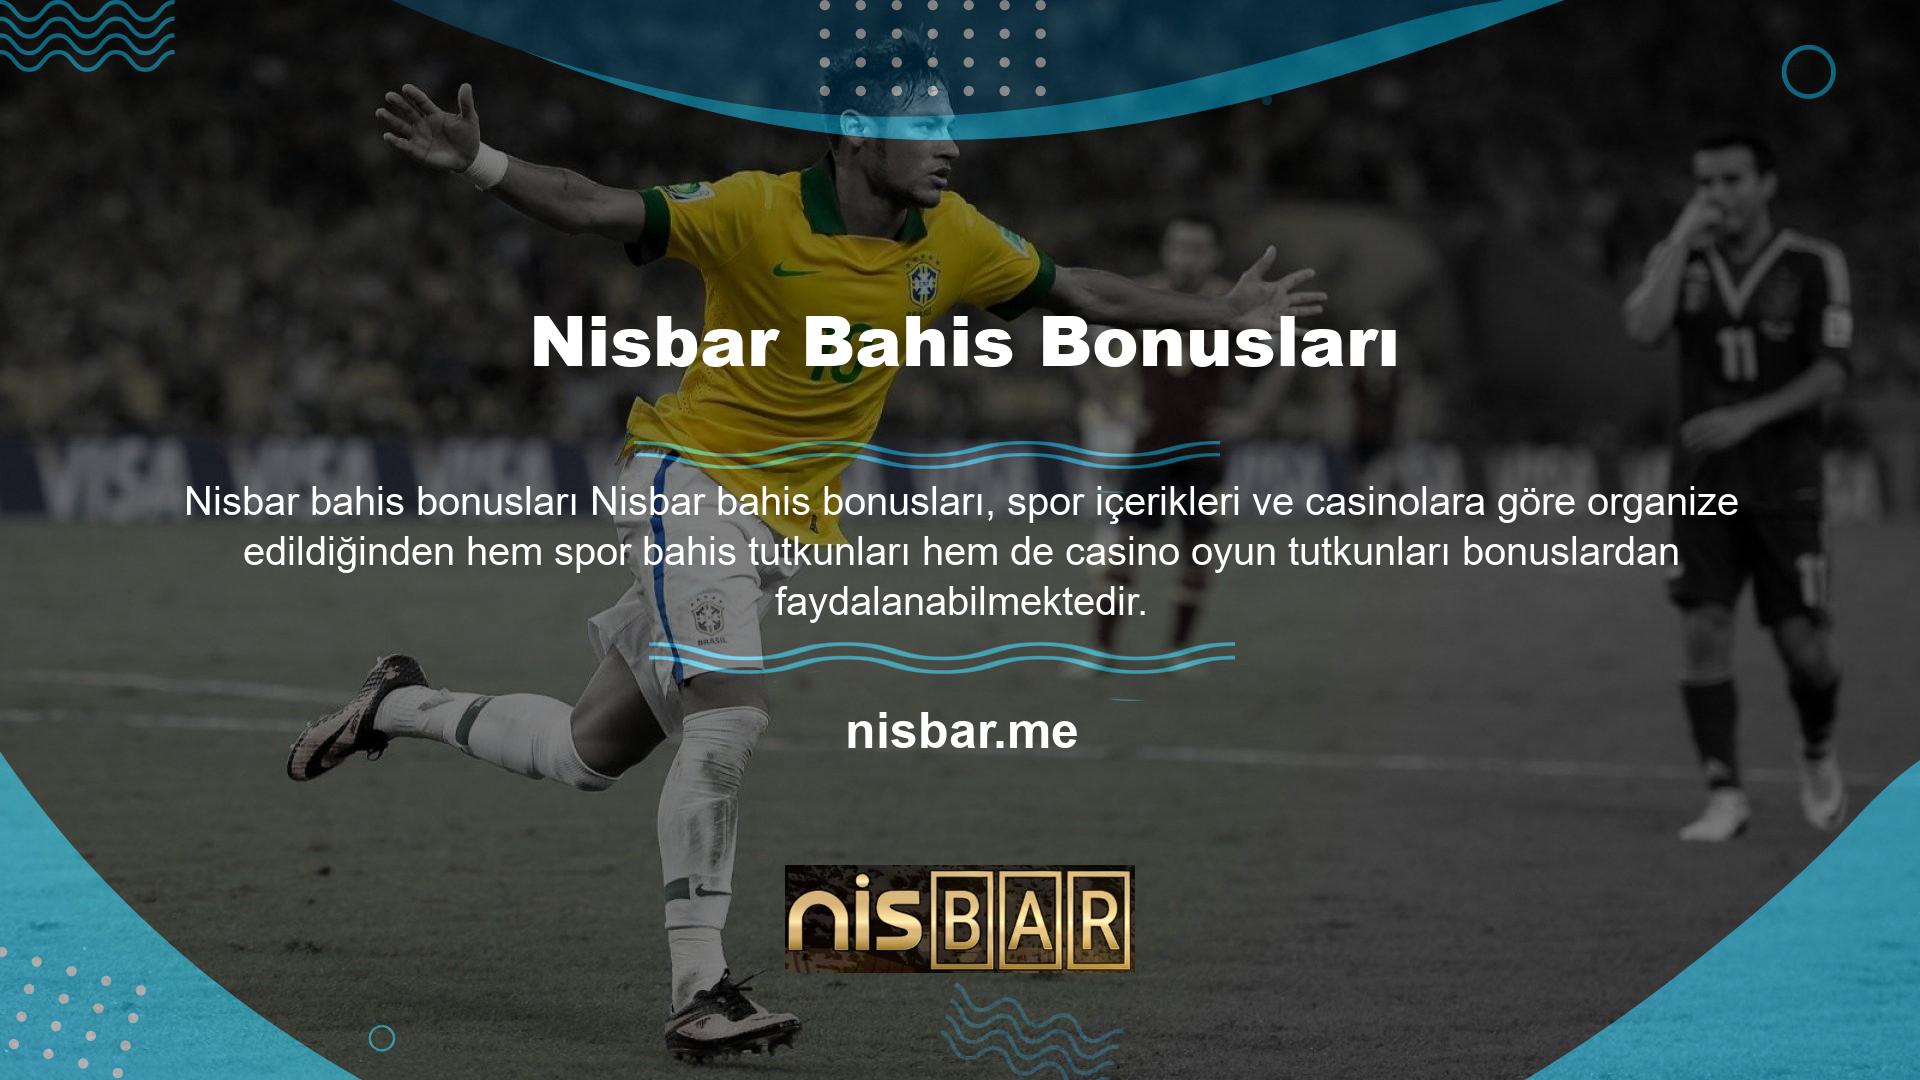 Oyuncular siteye kolayca erişebilir ve Nisbar üyesi olarak kayıt olabilir